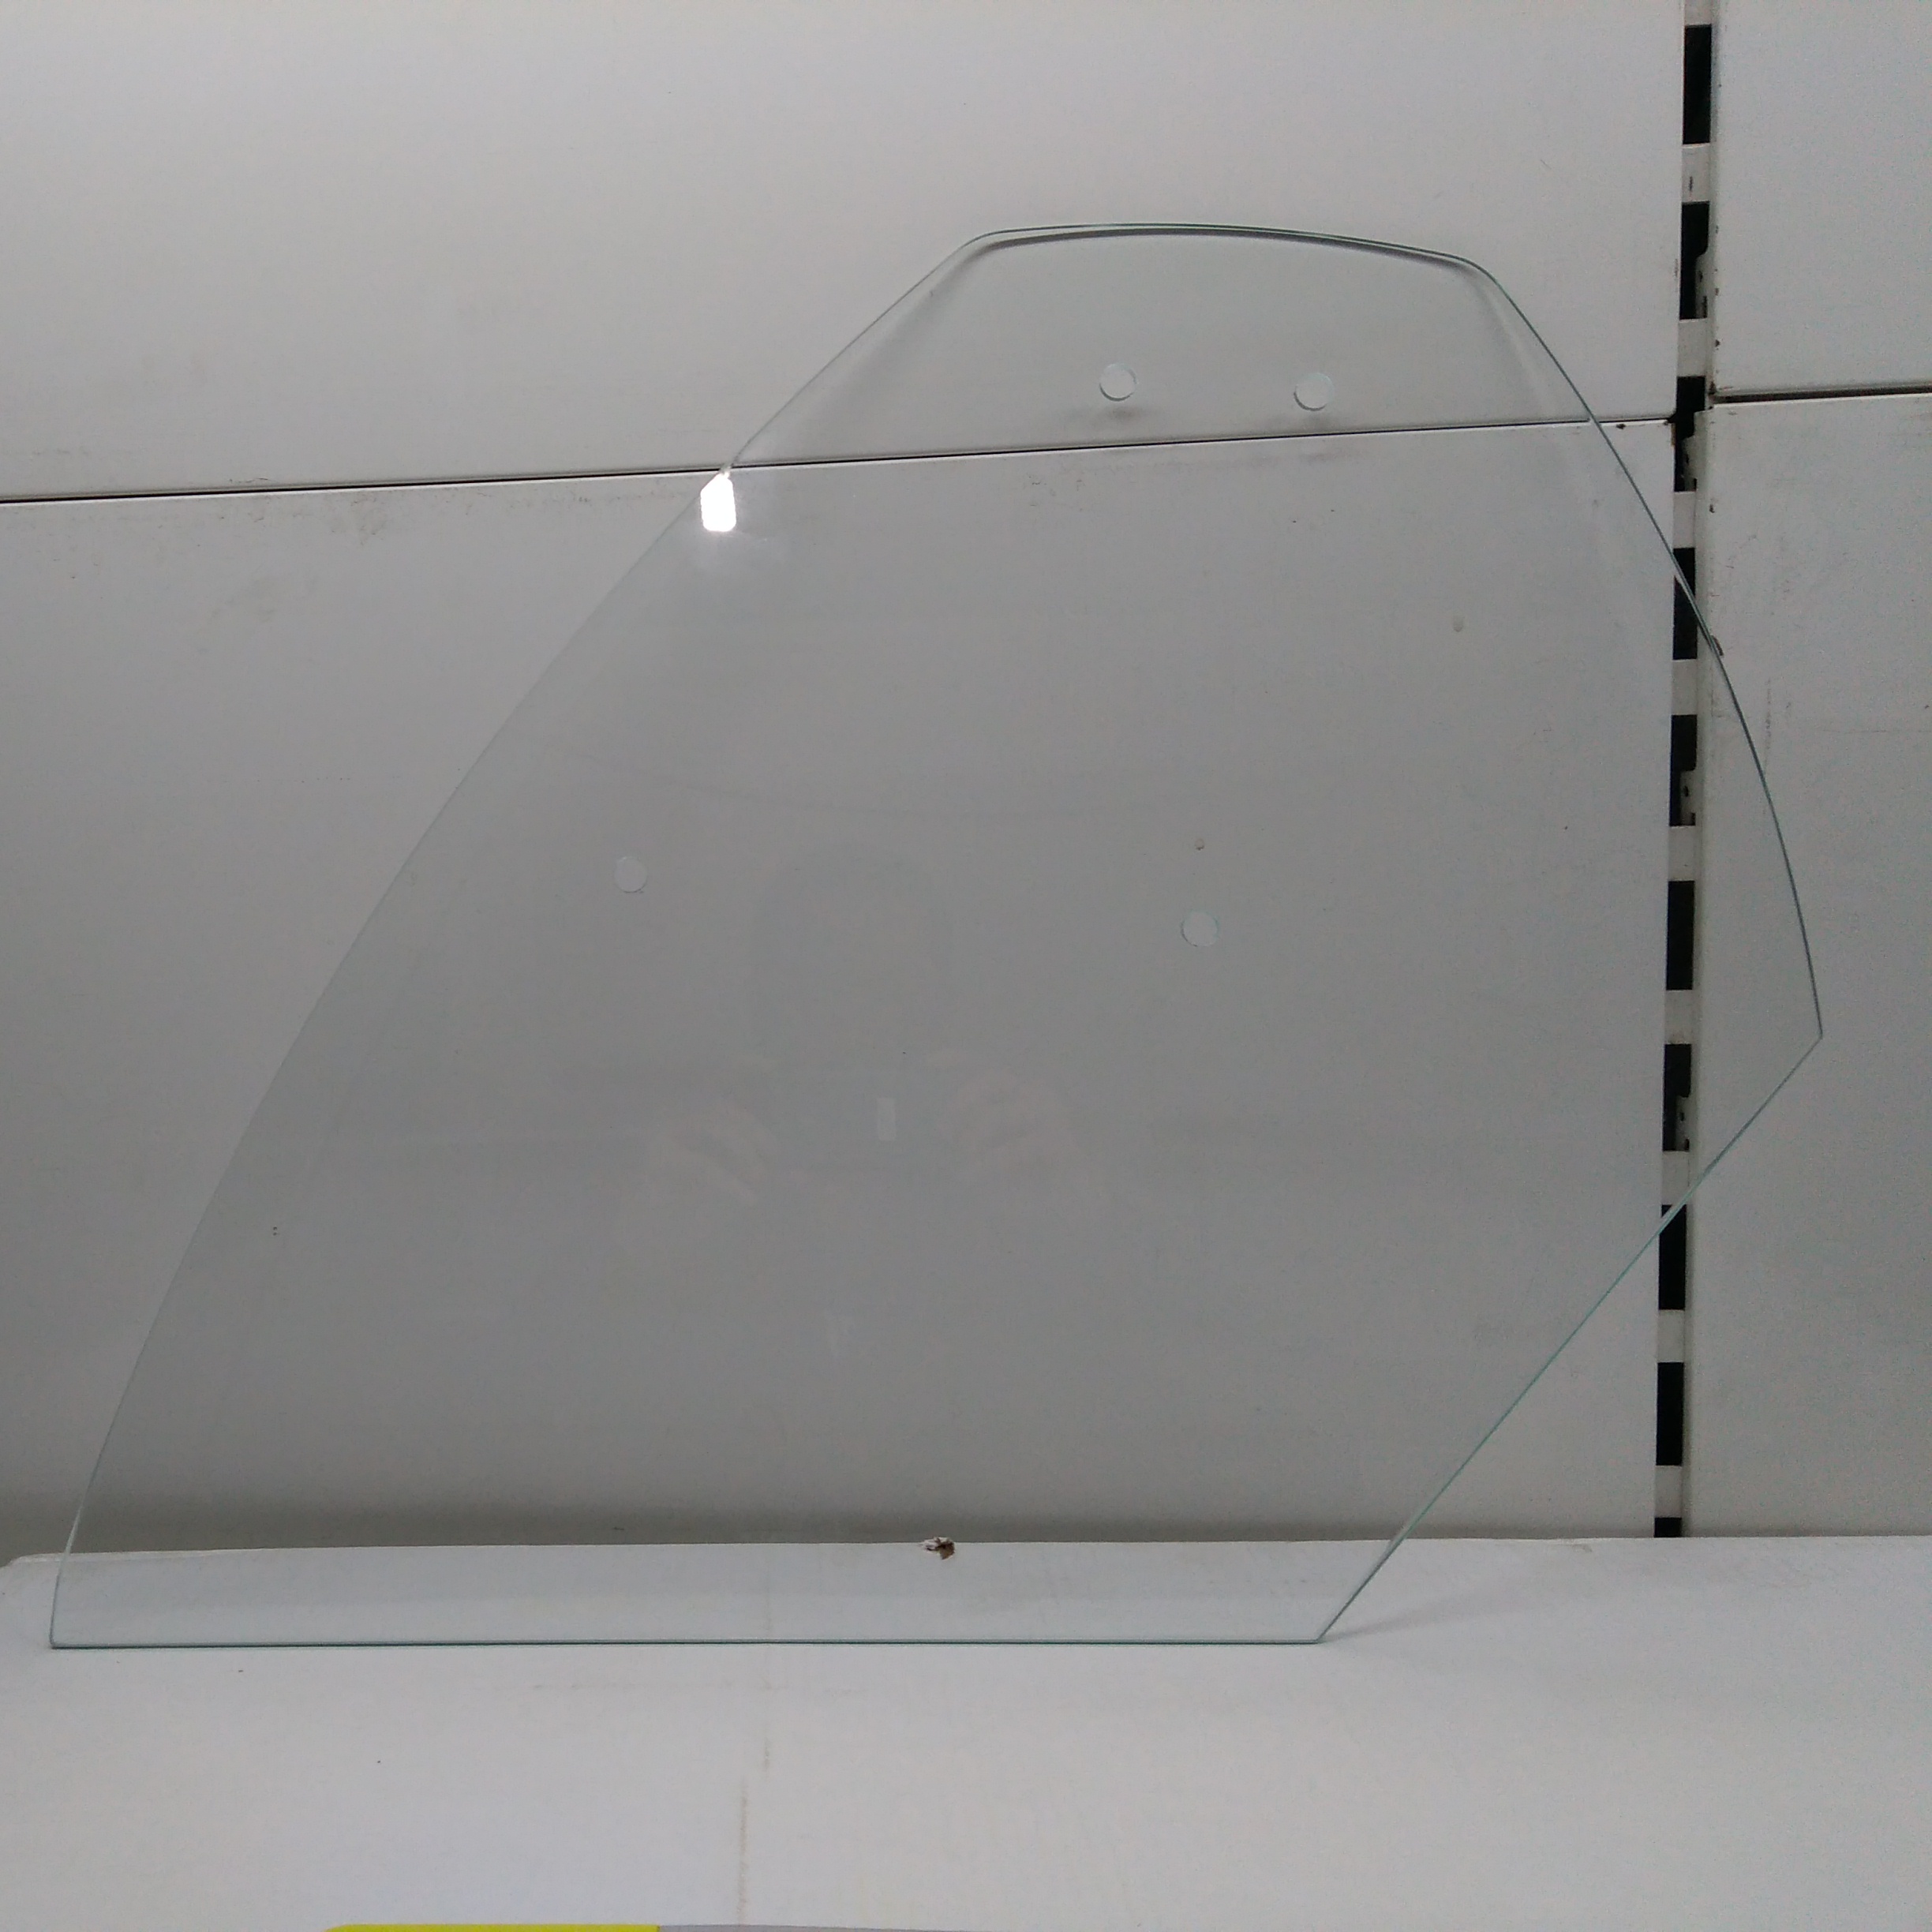 Стекло боковое прямое для холодильной витрины Полюс Эко 4 отверстия.2000 руб.шт.